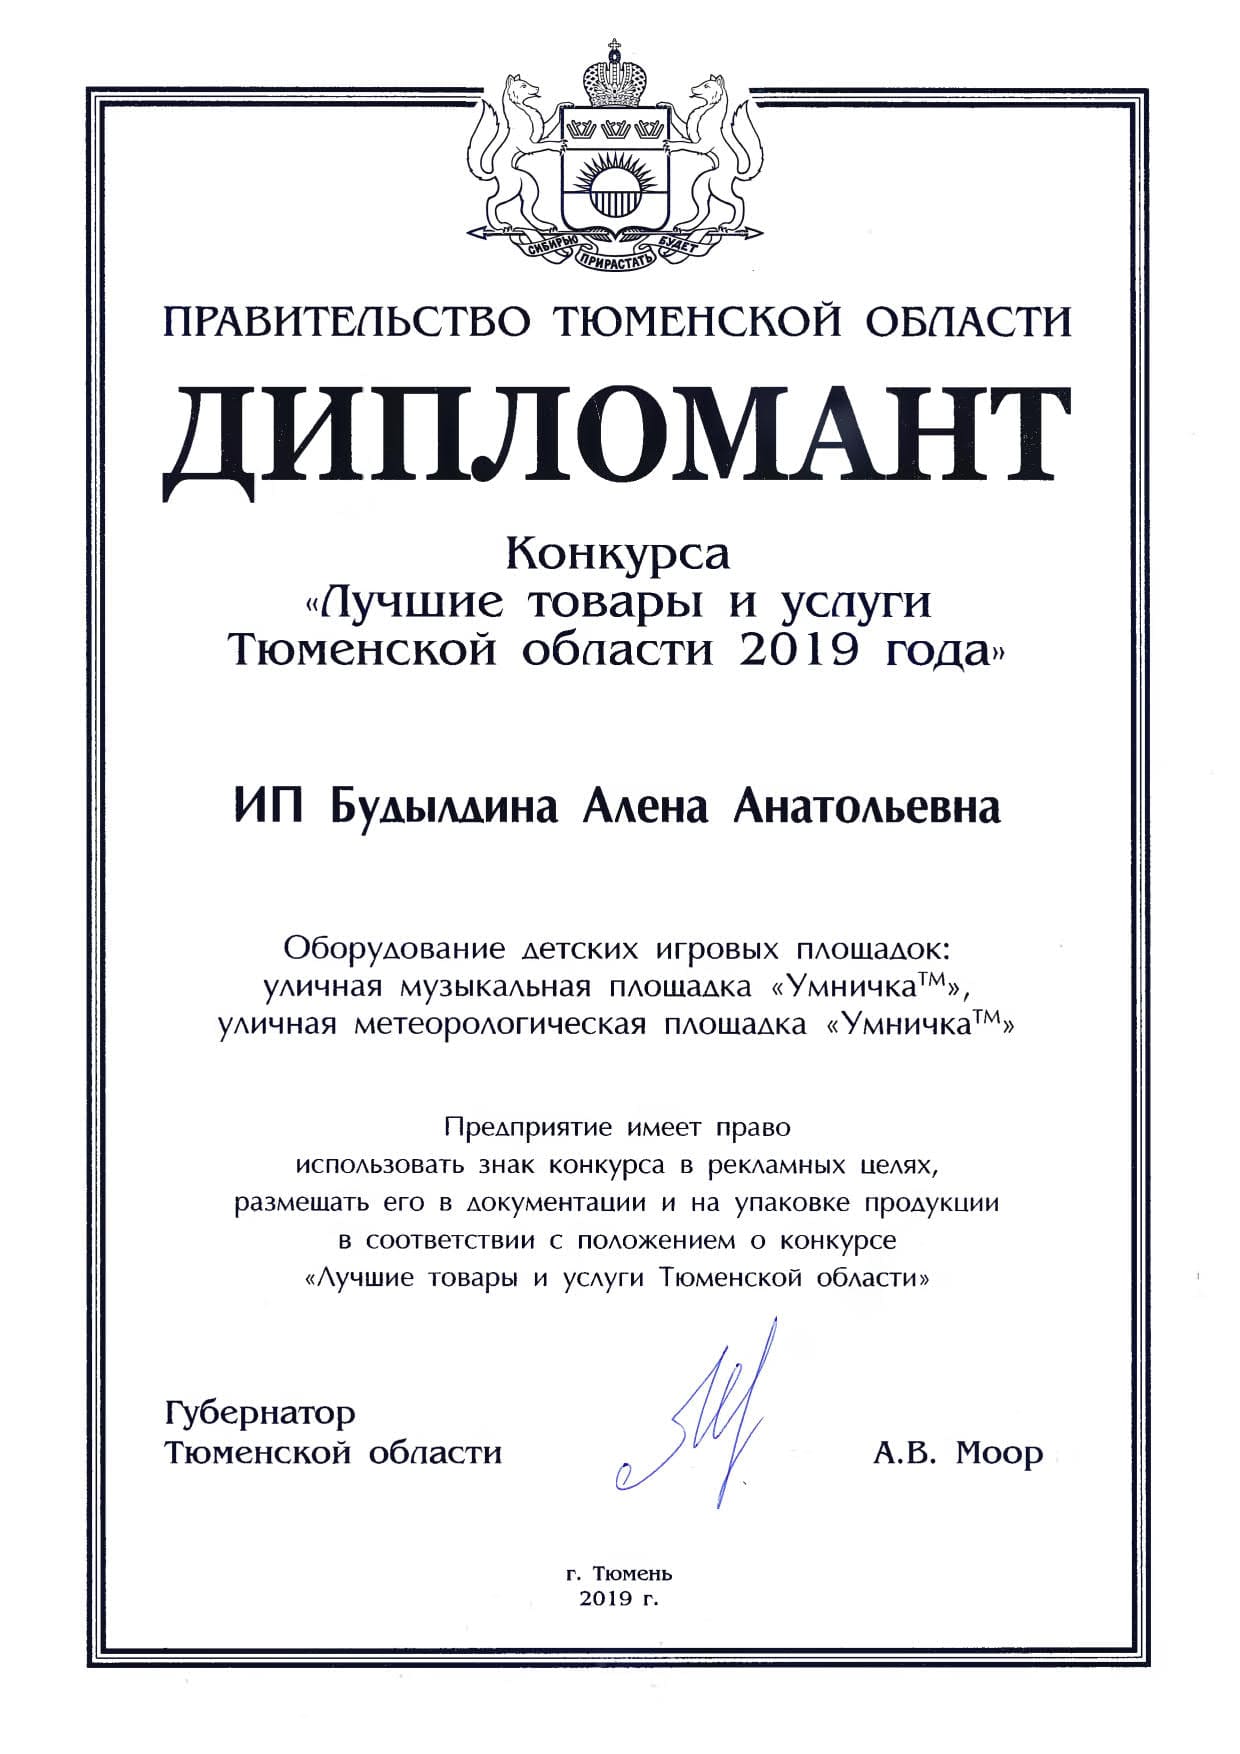 Награда конкурса "Лучшие товары и услуги Тюменской области 2019"